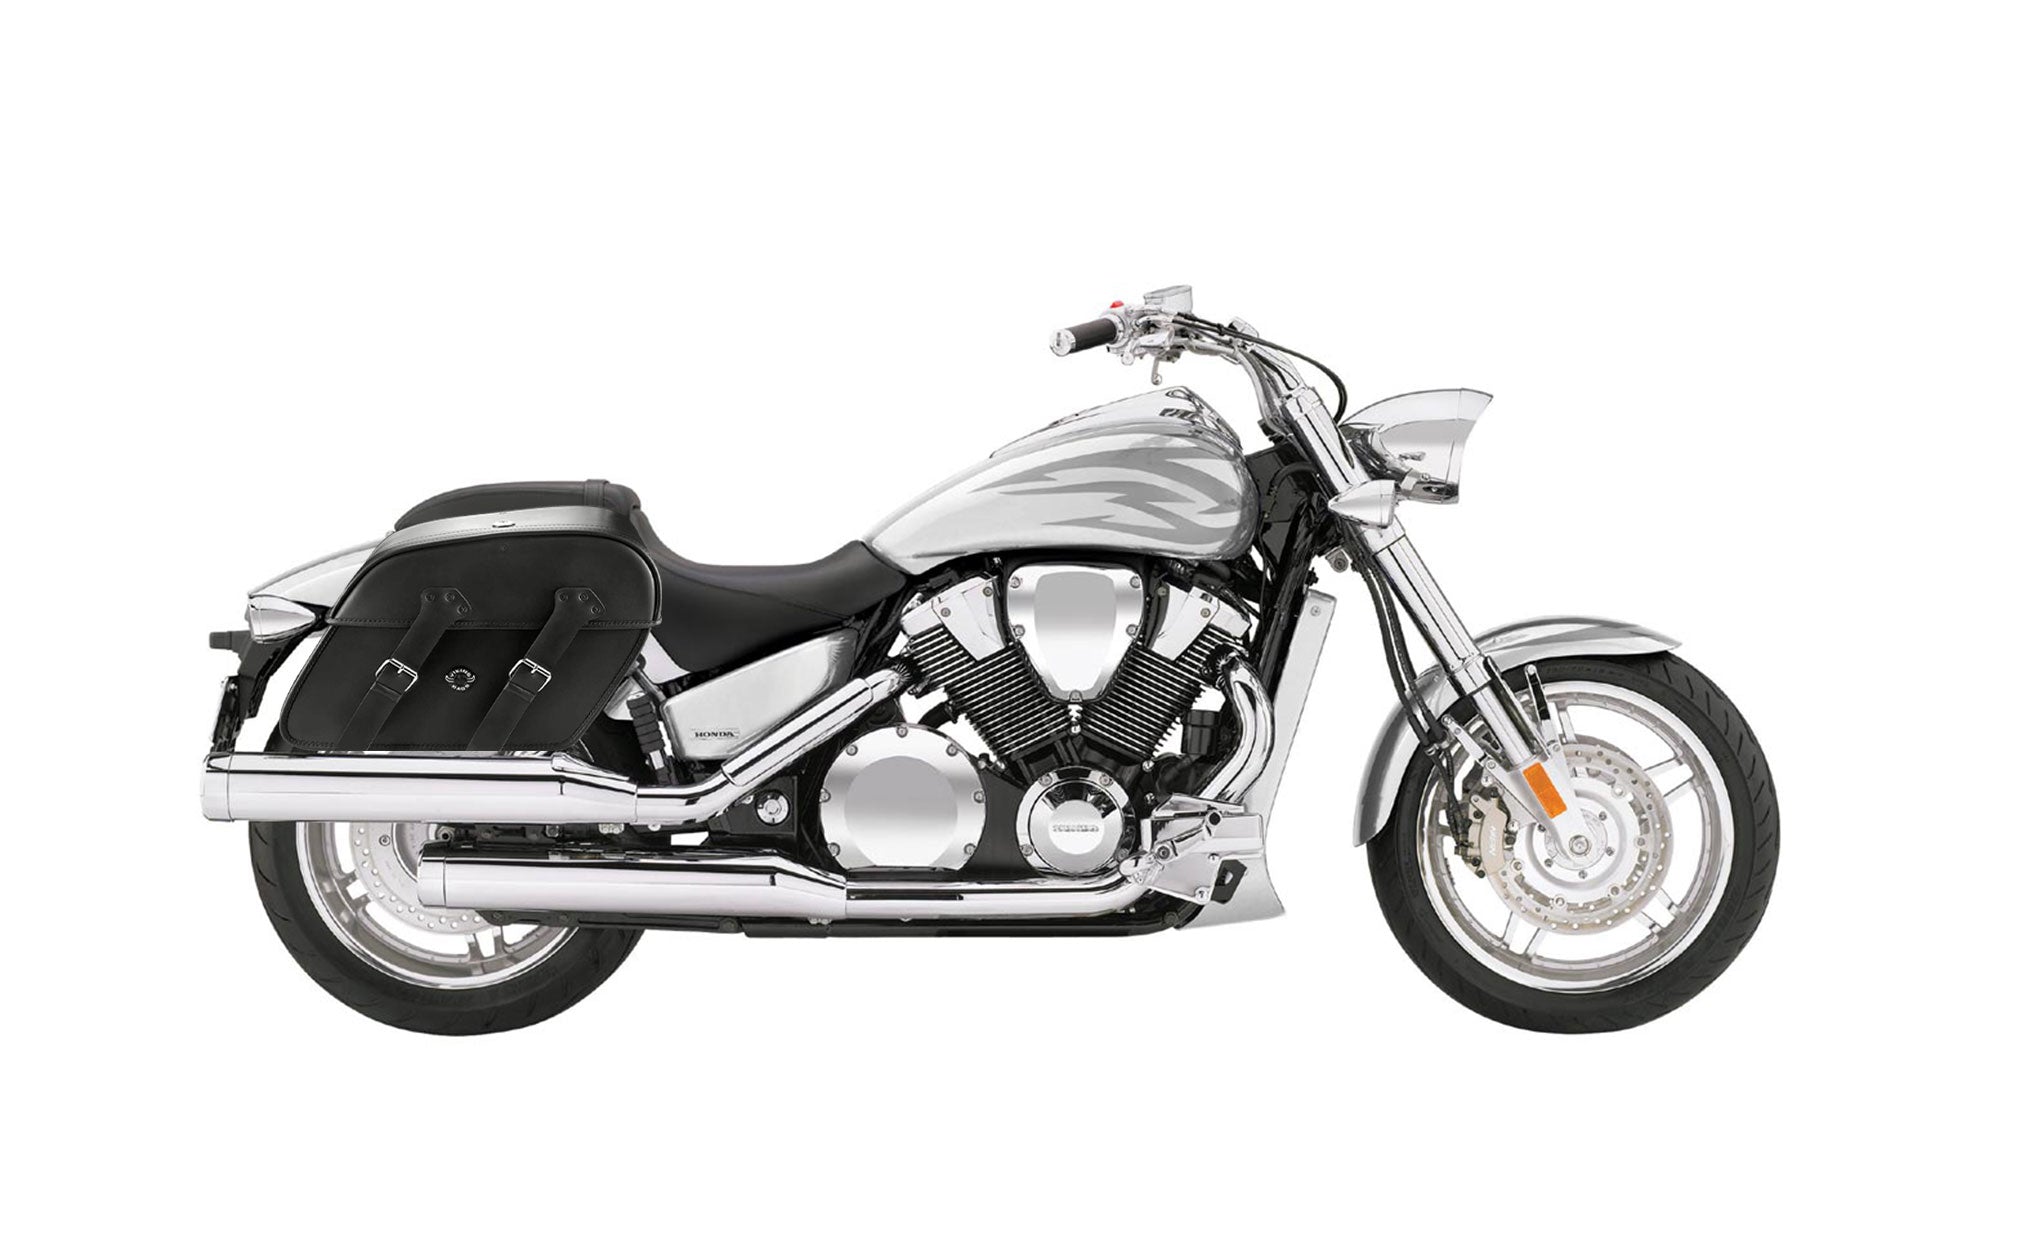 Viking Raven Extra Large Honda Vtx 1800 F Shock Cut Out Leather Motorcycle Saddlebags on Bike Photo @expand